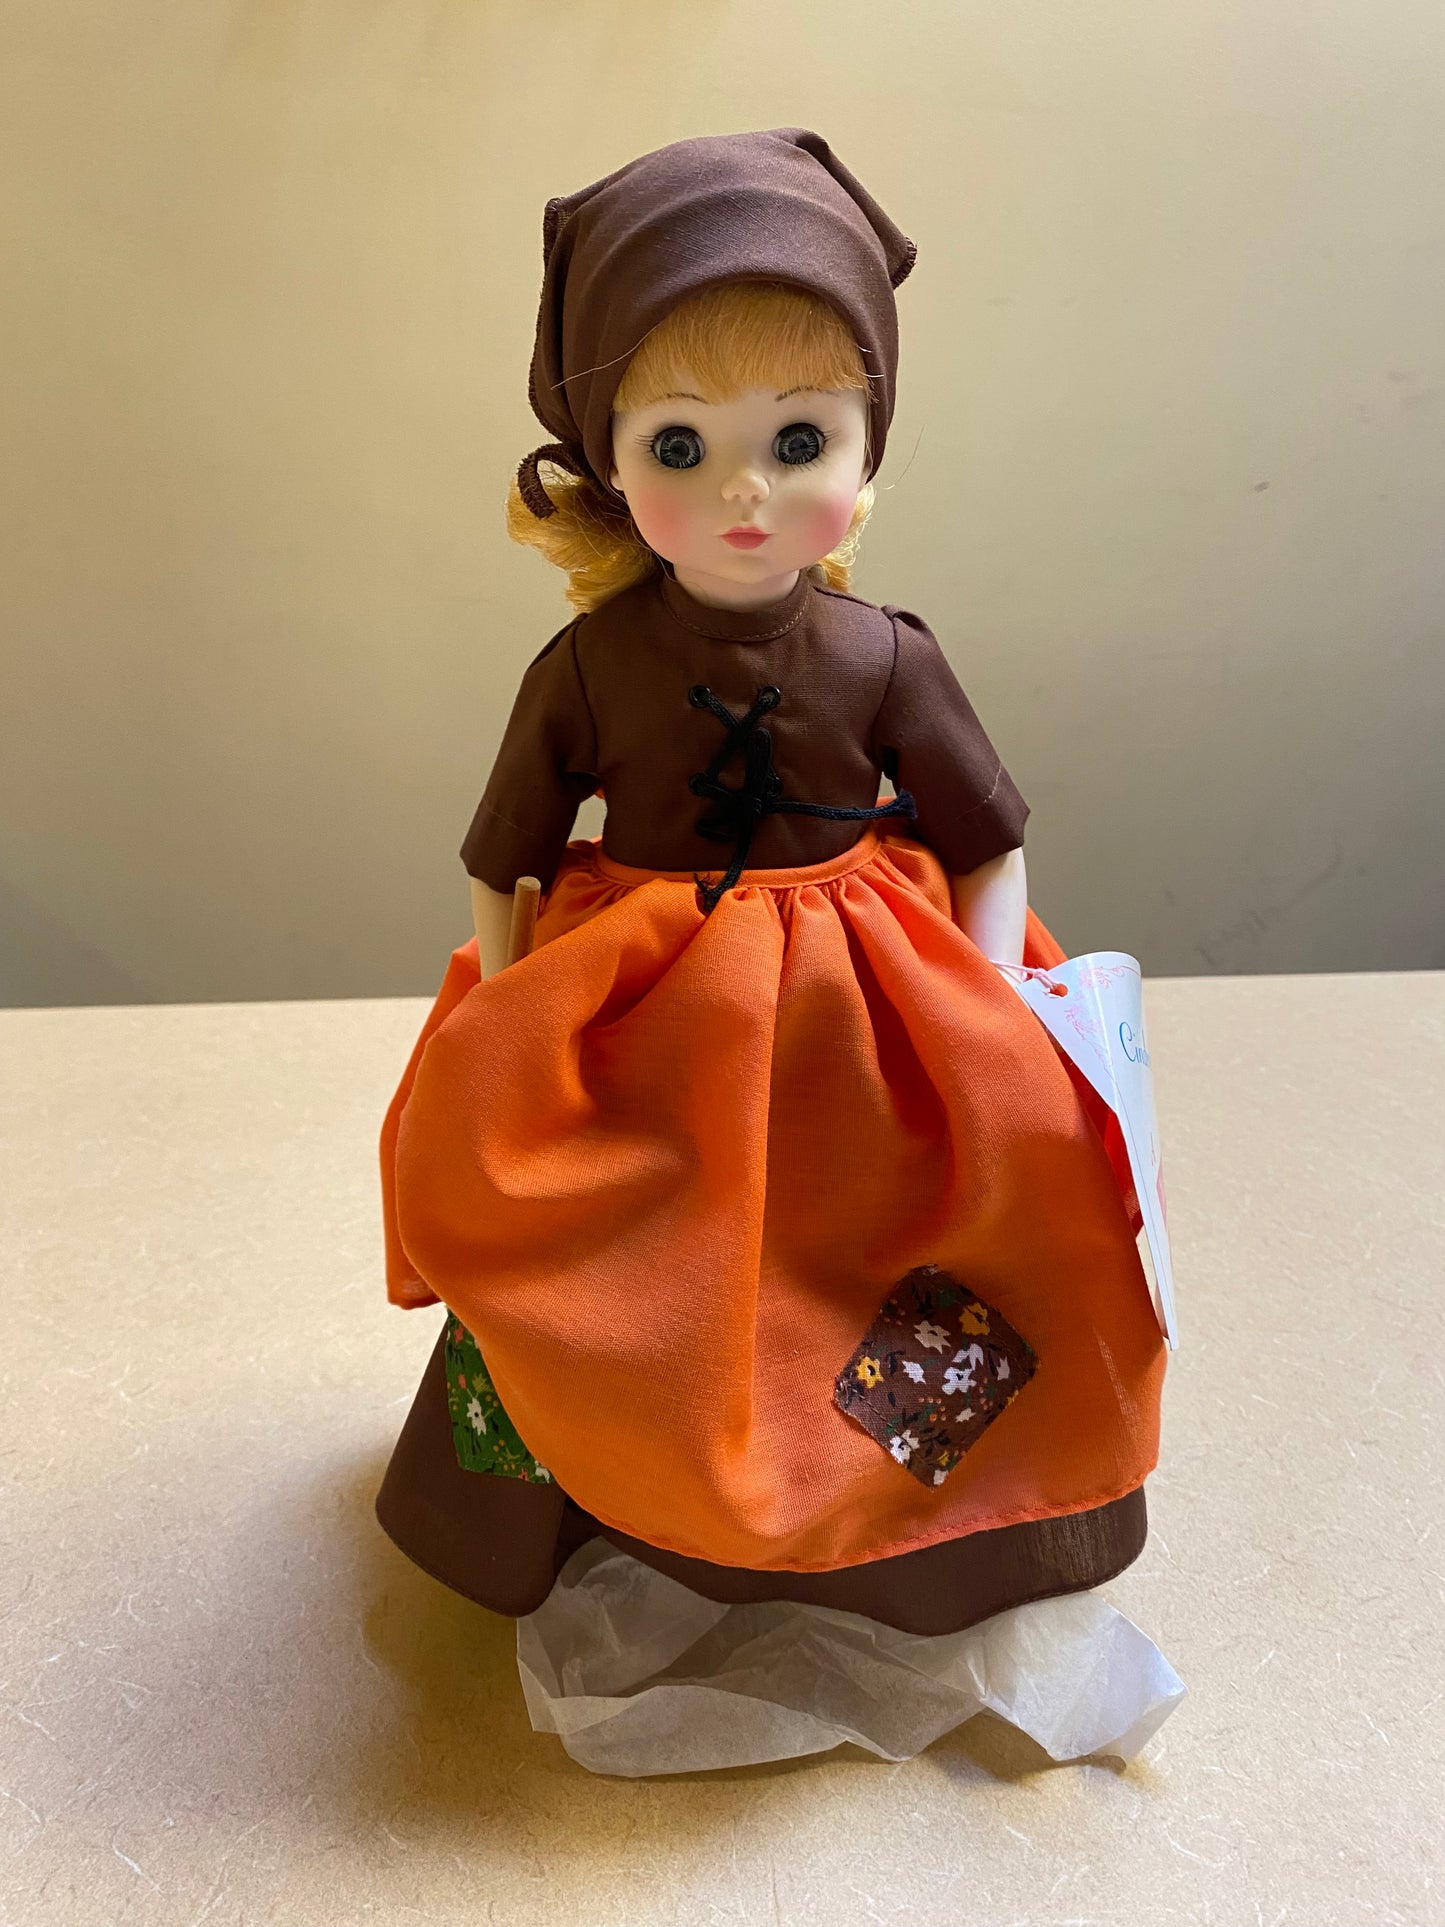 Madame Alexander's "Poor Cinderella" Doll